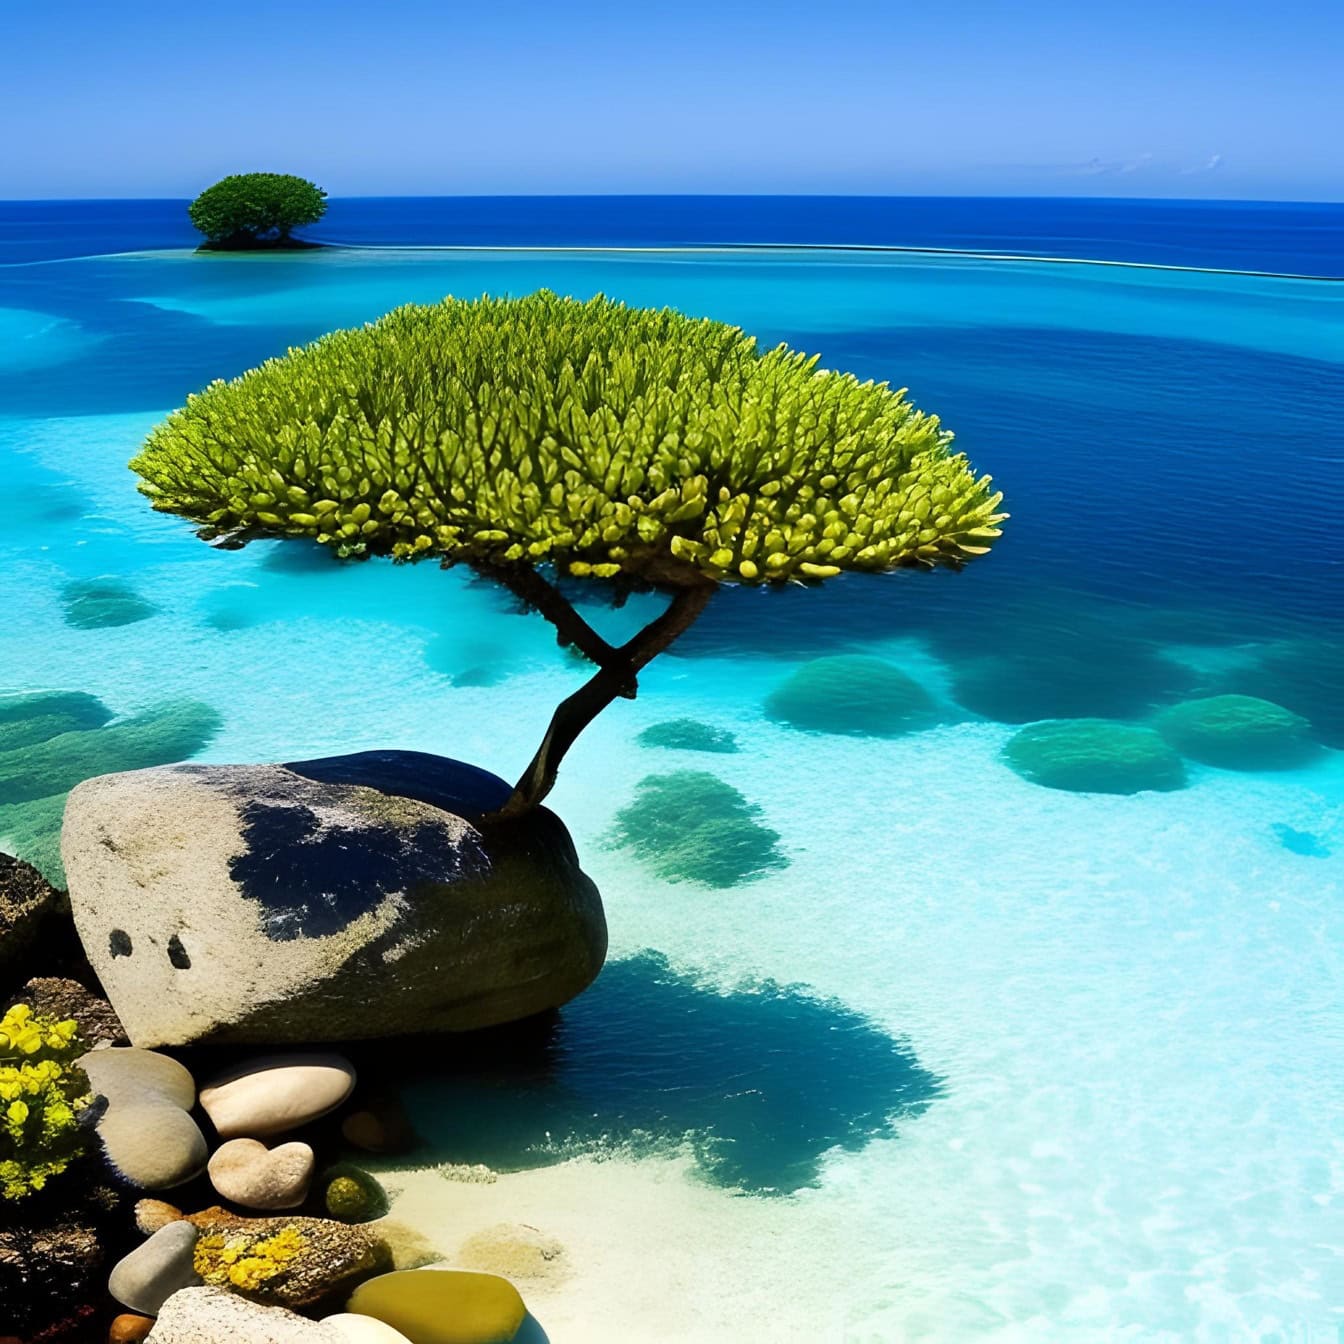 Grafika przedstawiająca drzewo rosnące na skale na wybrzeżu tropikalnej wyspy otoczonej przezroczystą wodą morską